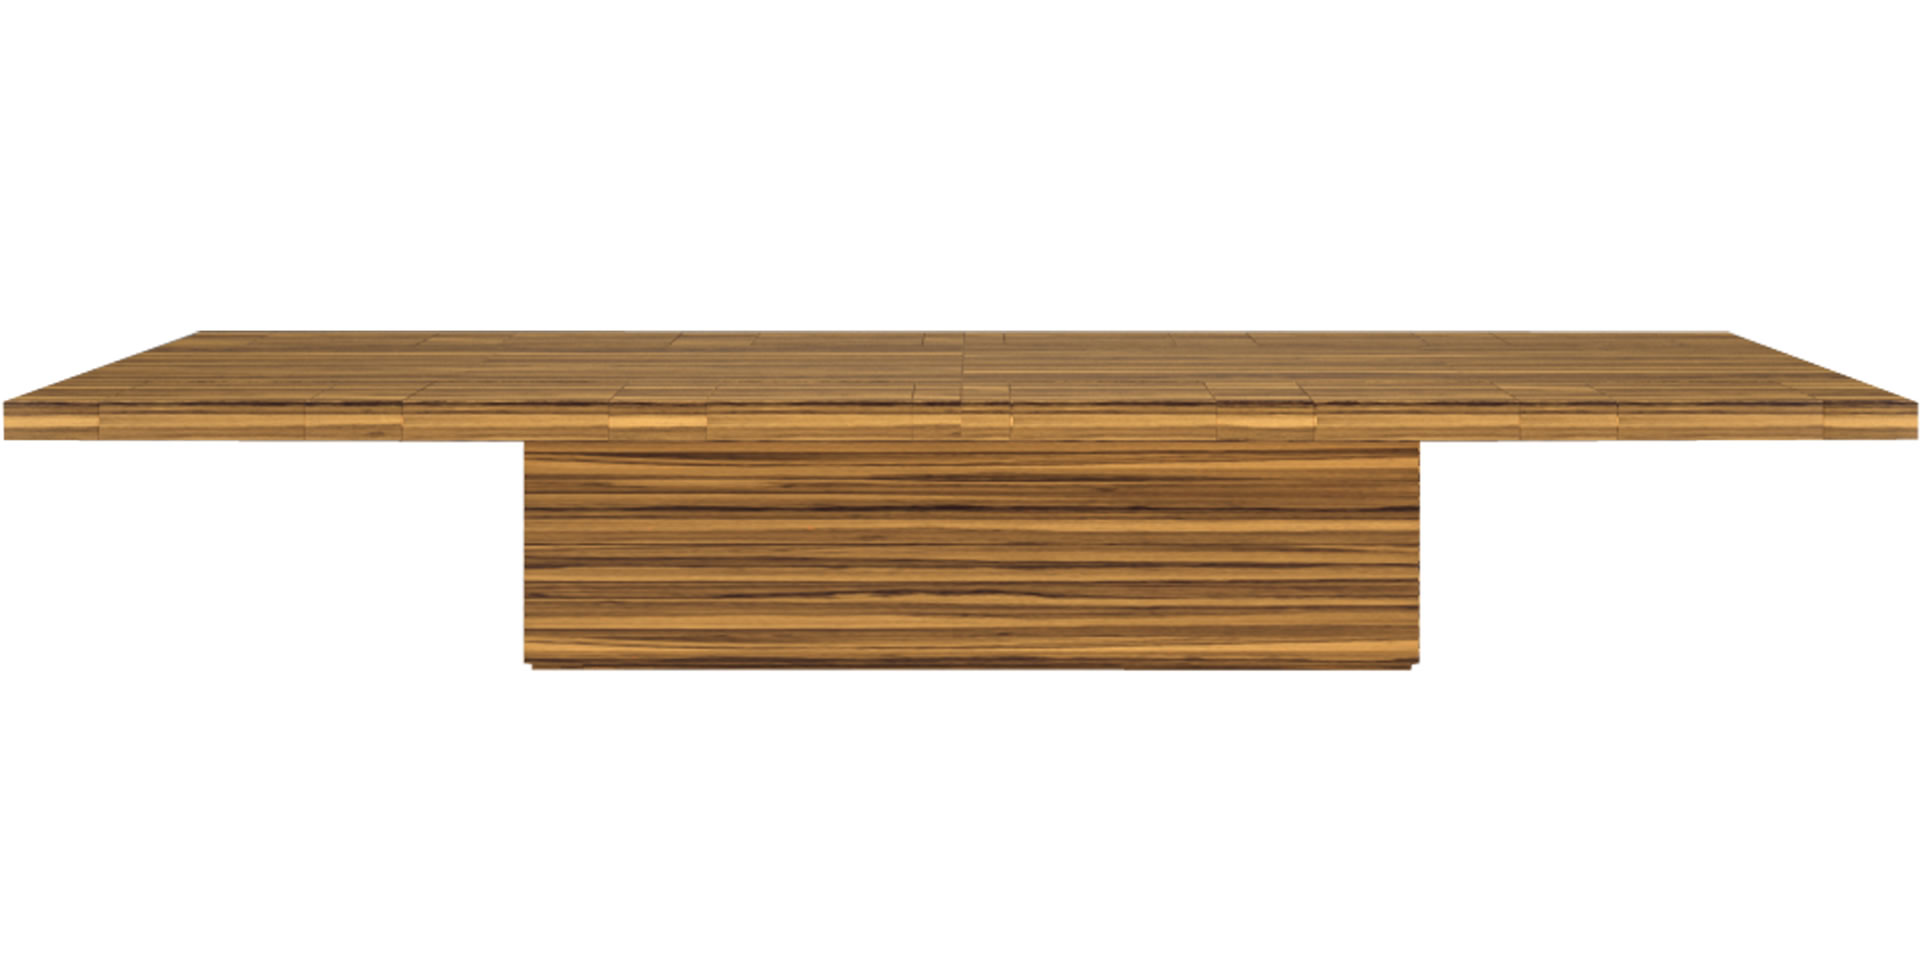 Konferenztisch modernes Design Holz hell Zebrano Luxus edel